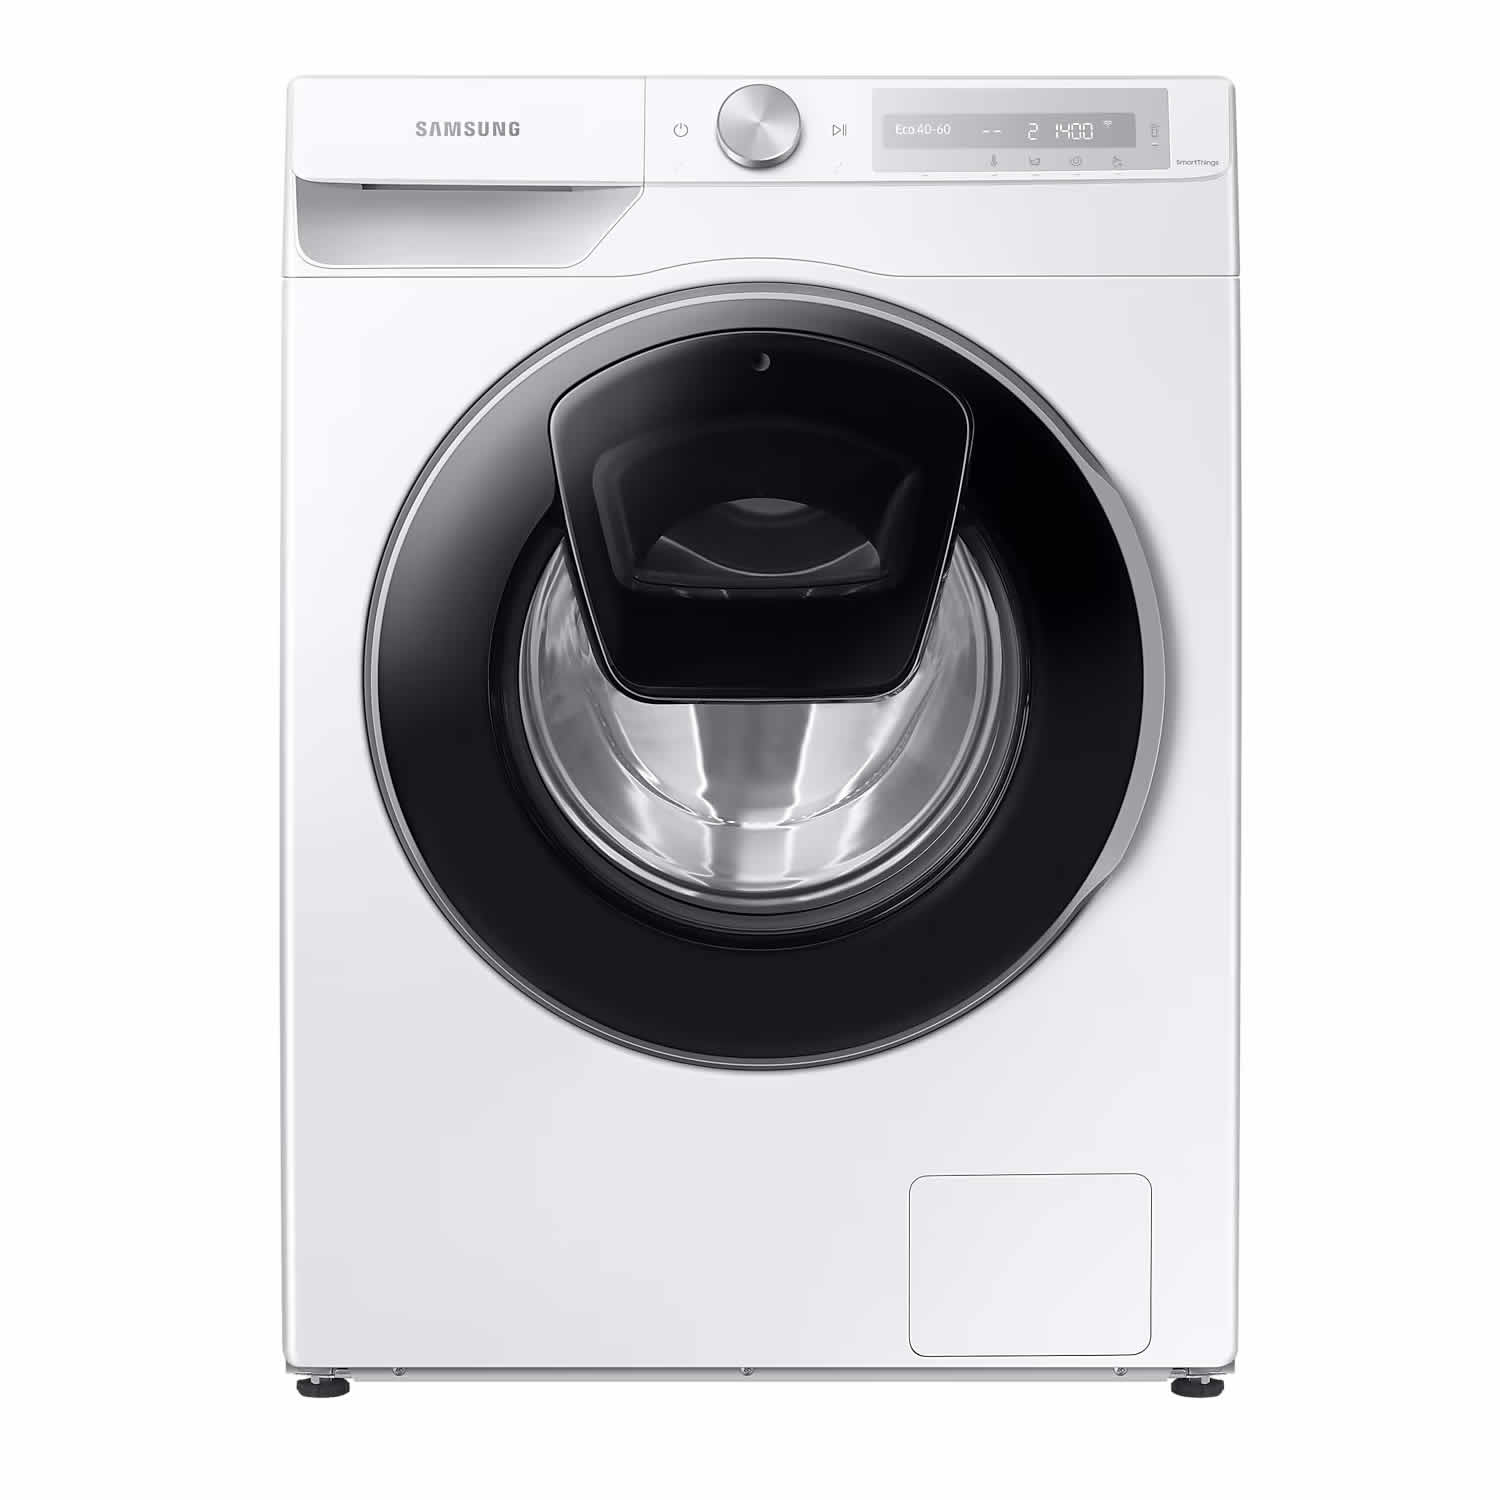 Samsung 1400rpm Washing Machine 10.5kg Load AddWash Auto Dose